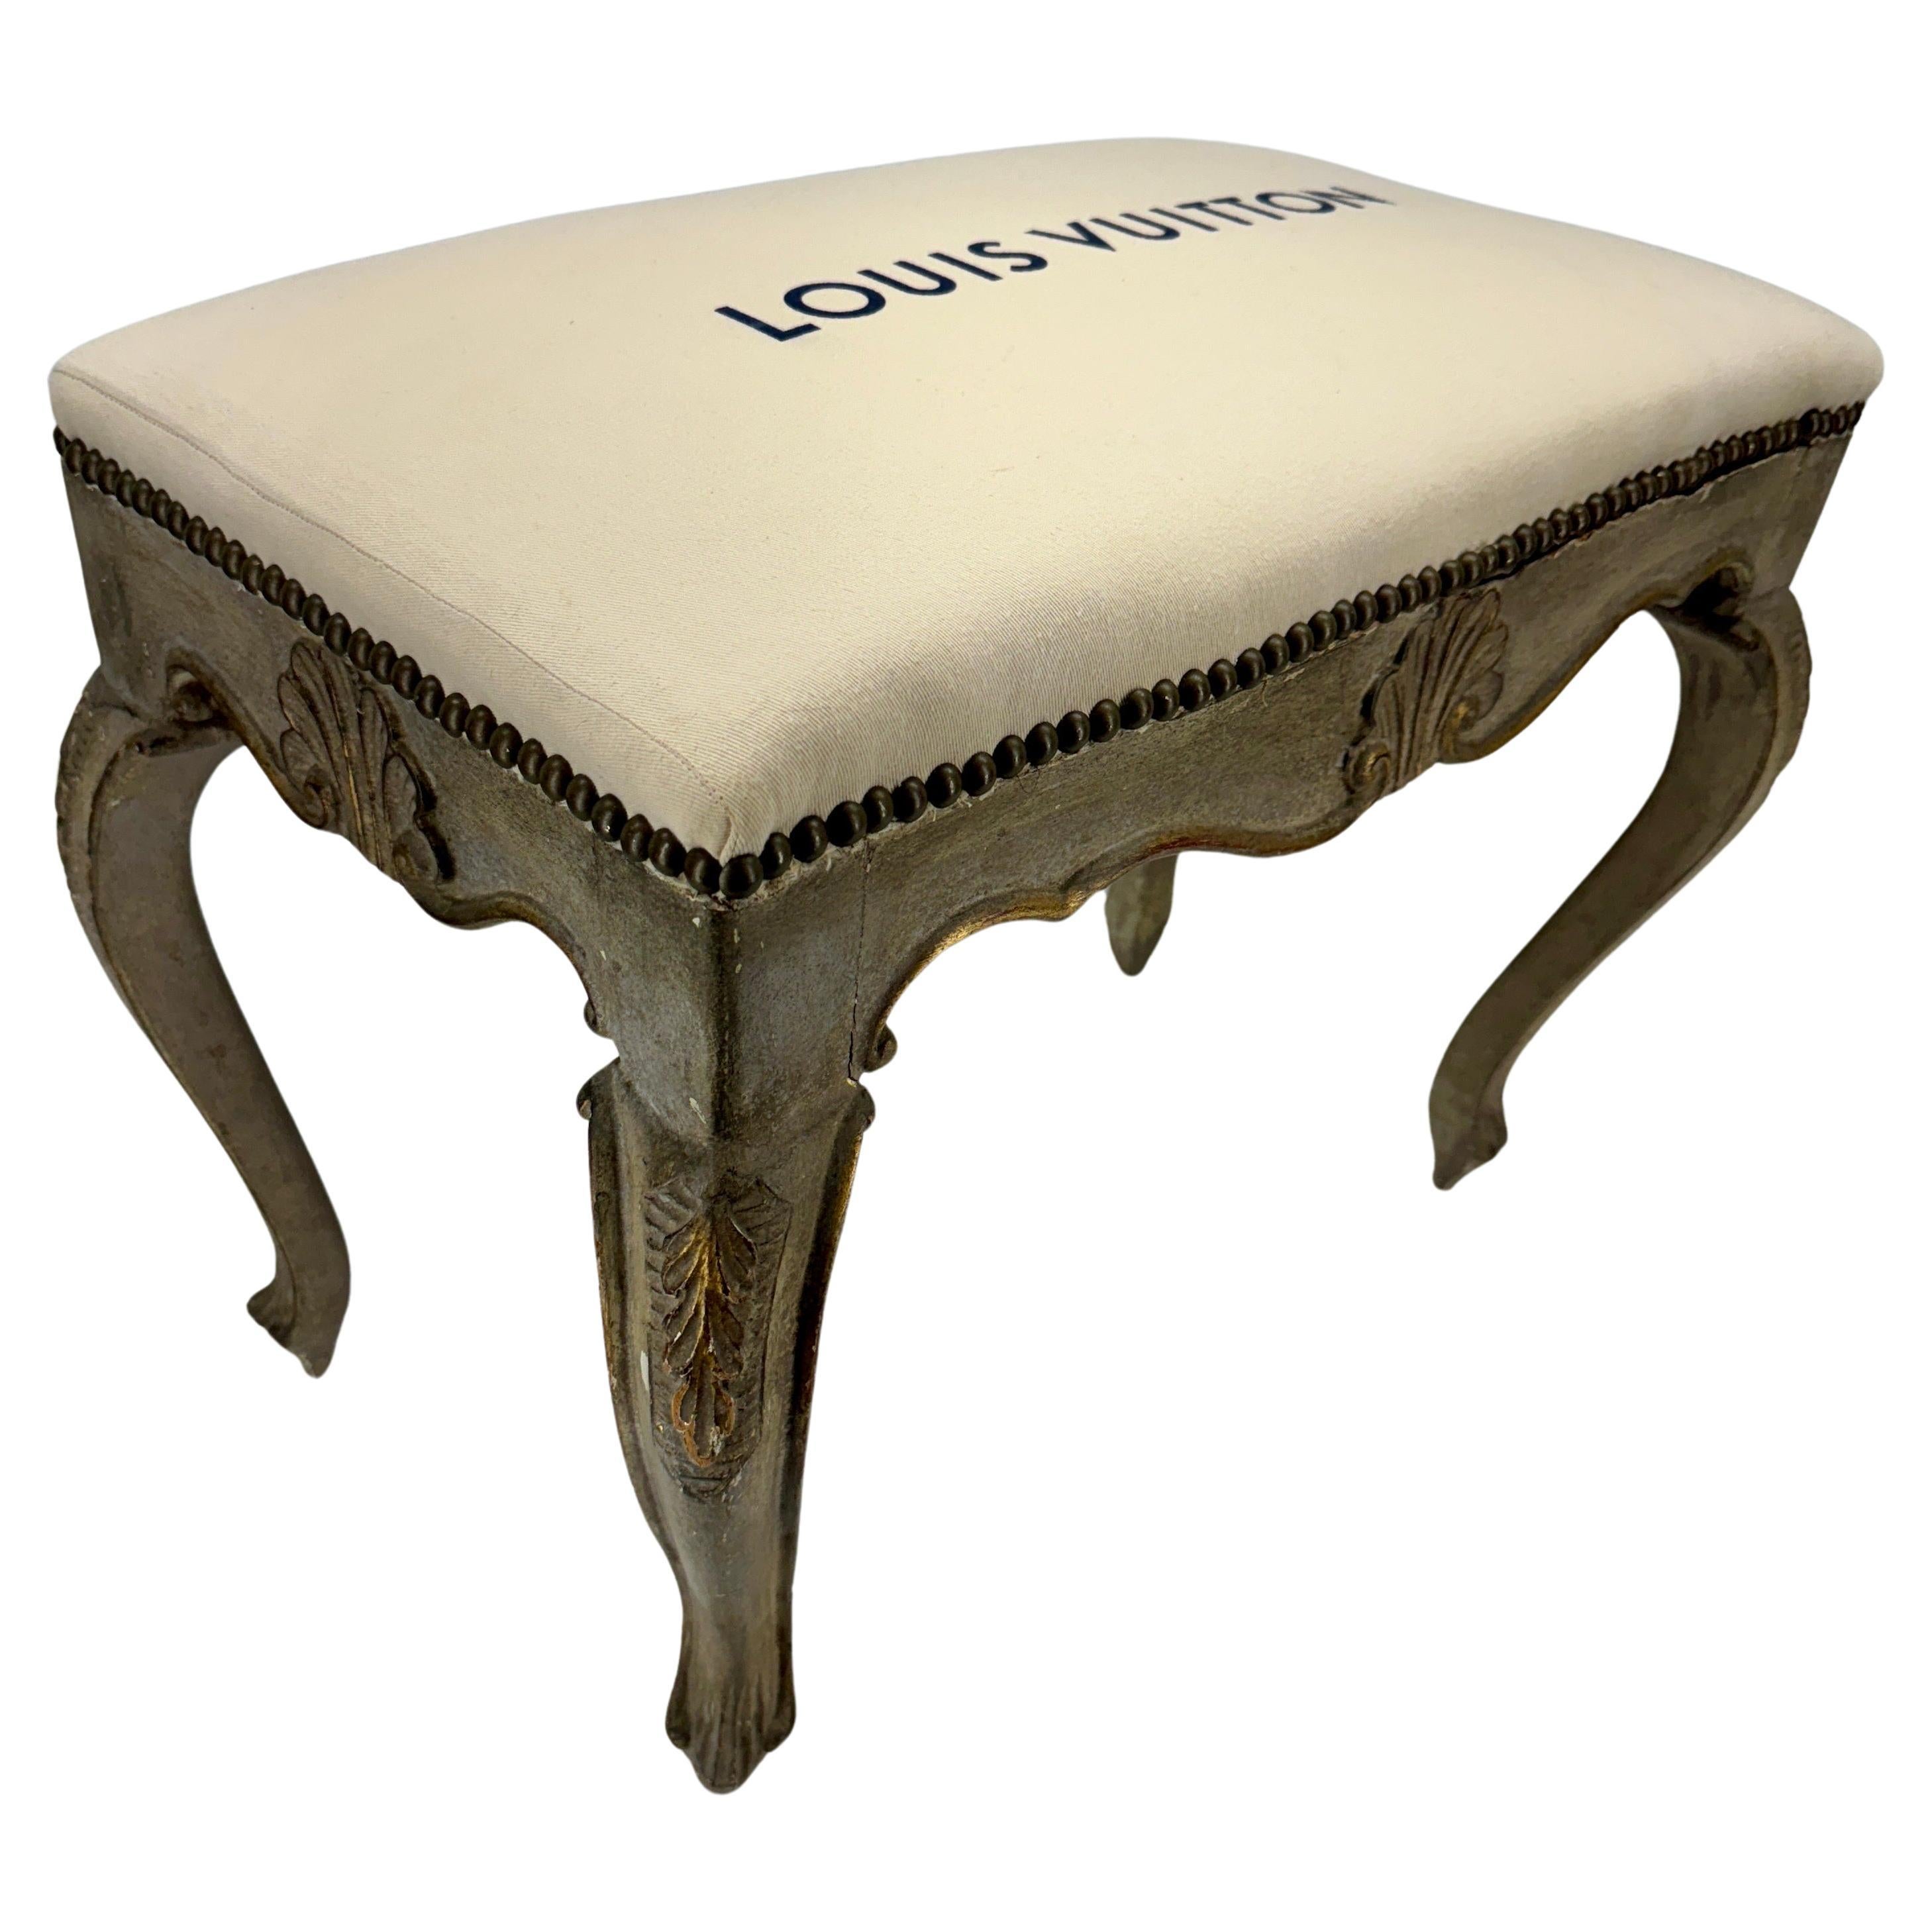 Banc rembourré Louis Vuitton de style Rococo français avec boiseries rocaille sculptées et imprimé Louis Vuitton sur l'assise rembourrée. Il s'agit assurément d'une pièce de choix dans un salon ou une chambre à coucher, formel ou informel.